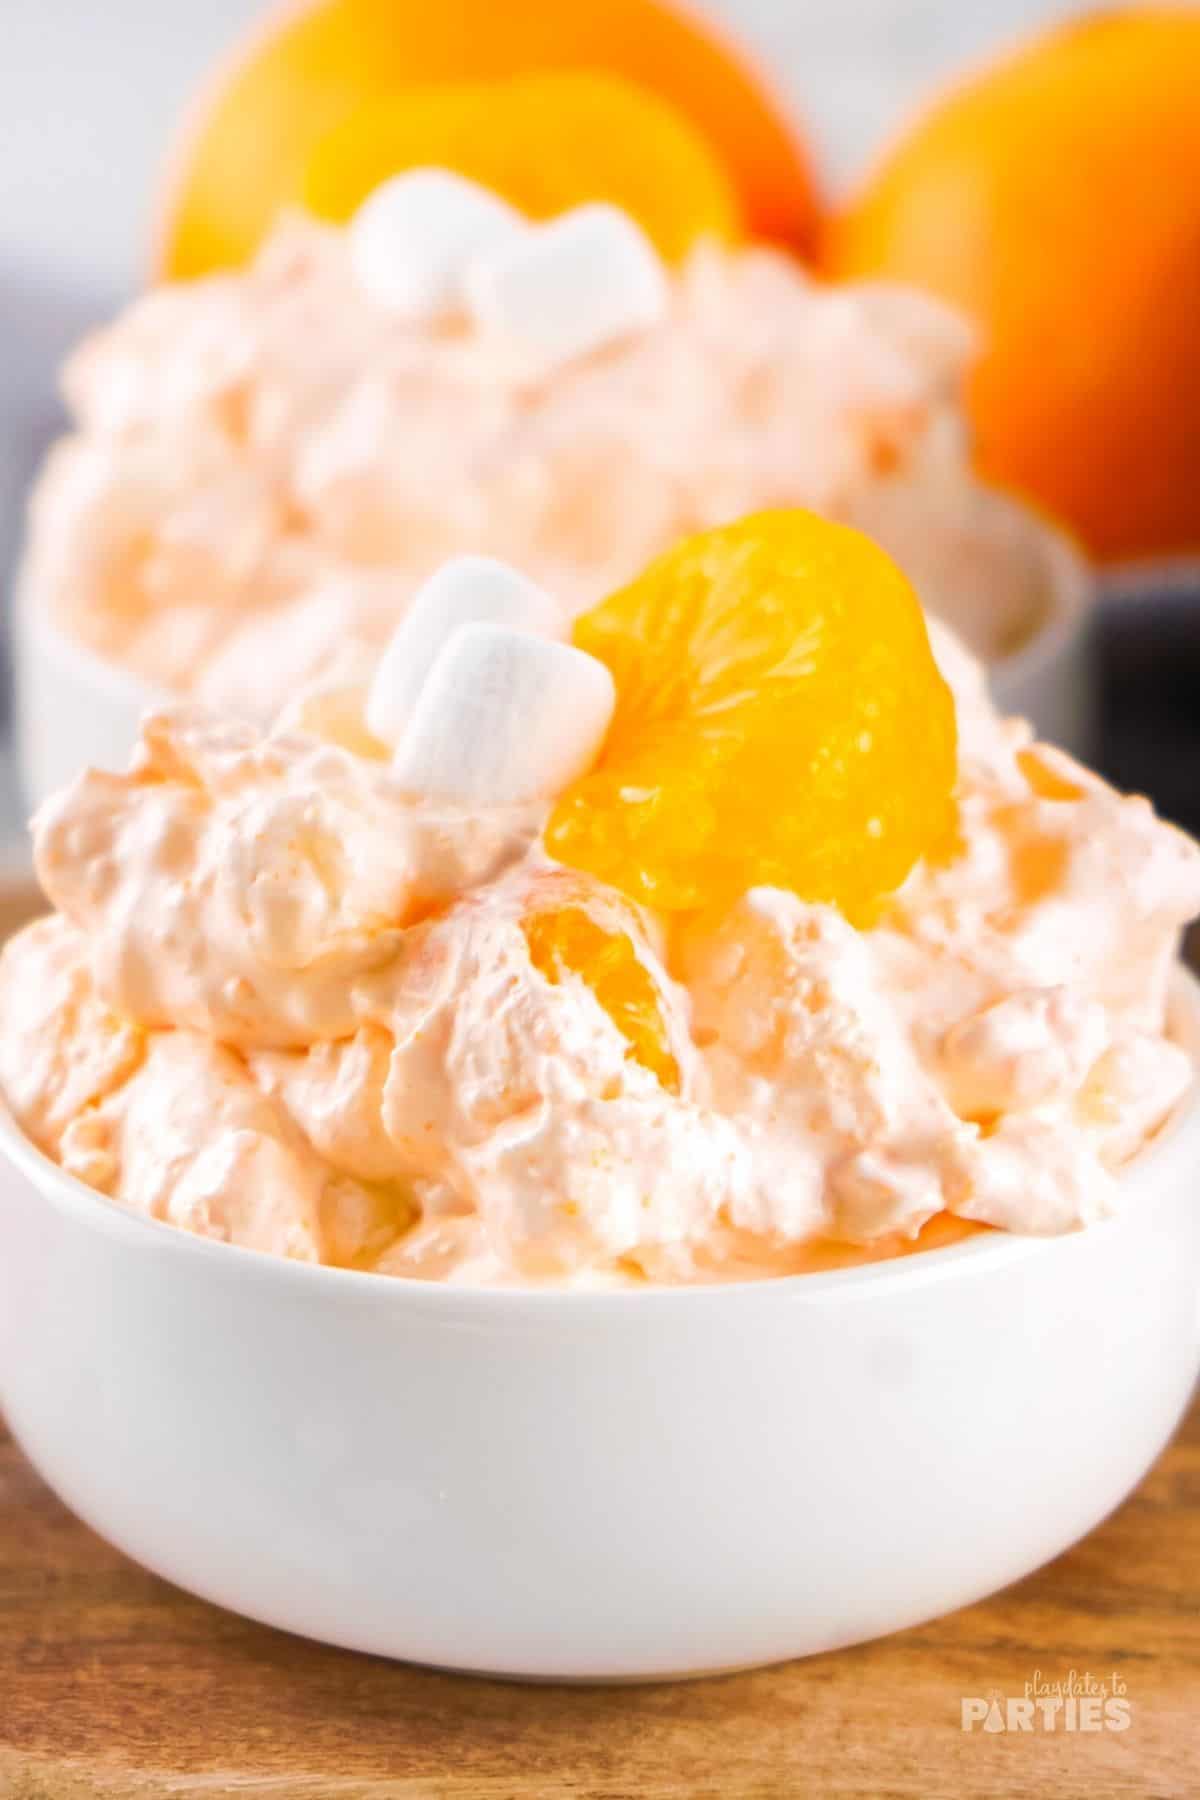 Creamy orange fluff in a white bowl.